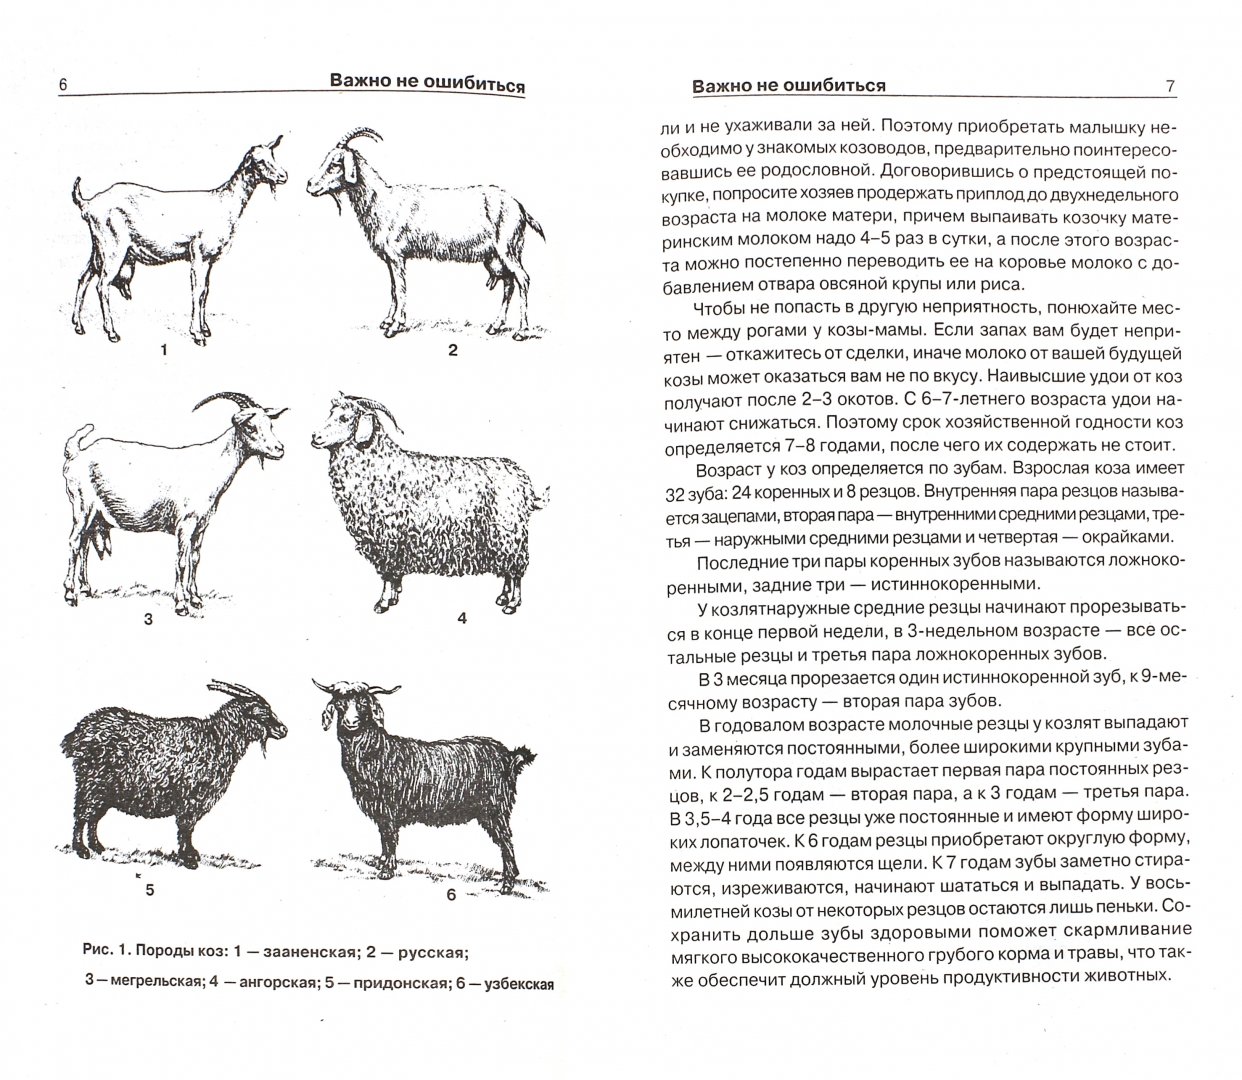 Характеристика пород коз. Таблица веса коз. Как определить Возраст козлят. Как узнать Возраст козлят. Породы коз схема.